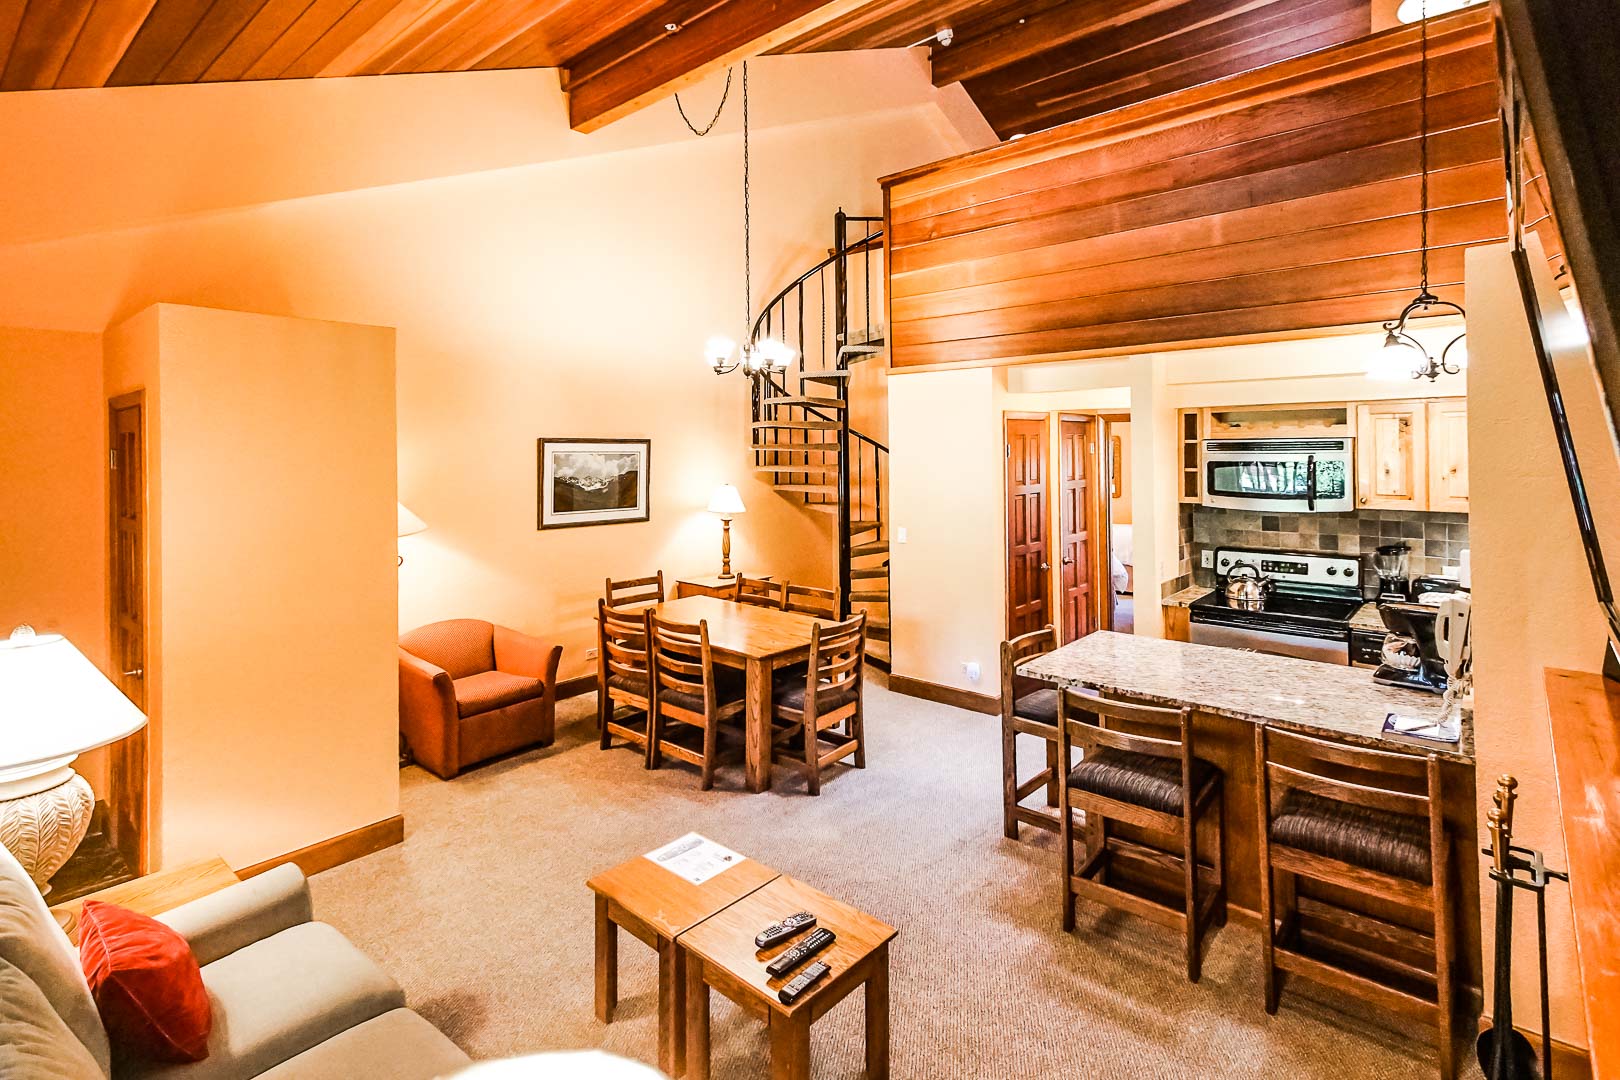 A spacious Loft condominiums at VRI's Cedar at Streamside in Colorado.